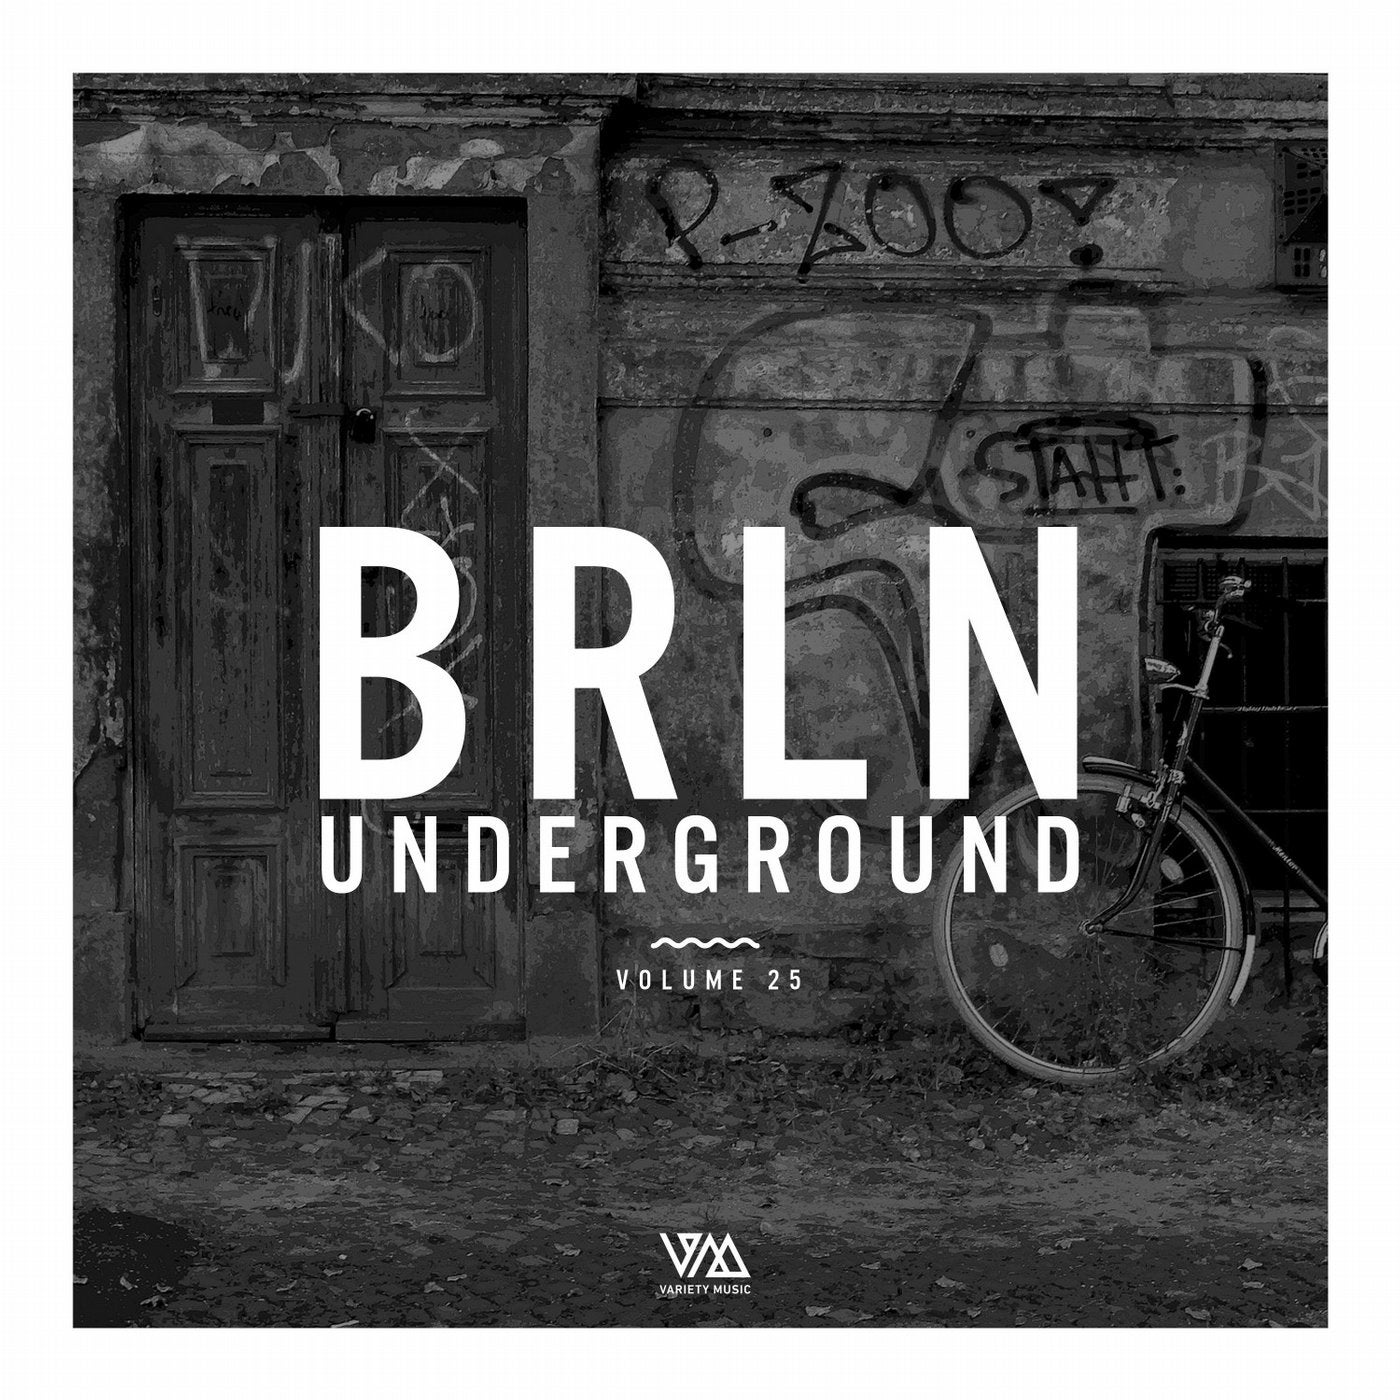 BRLN Underground Vol. 25